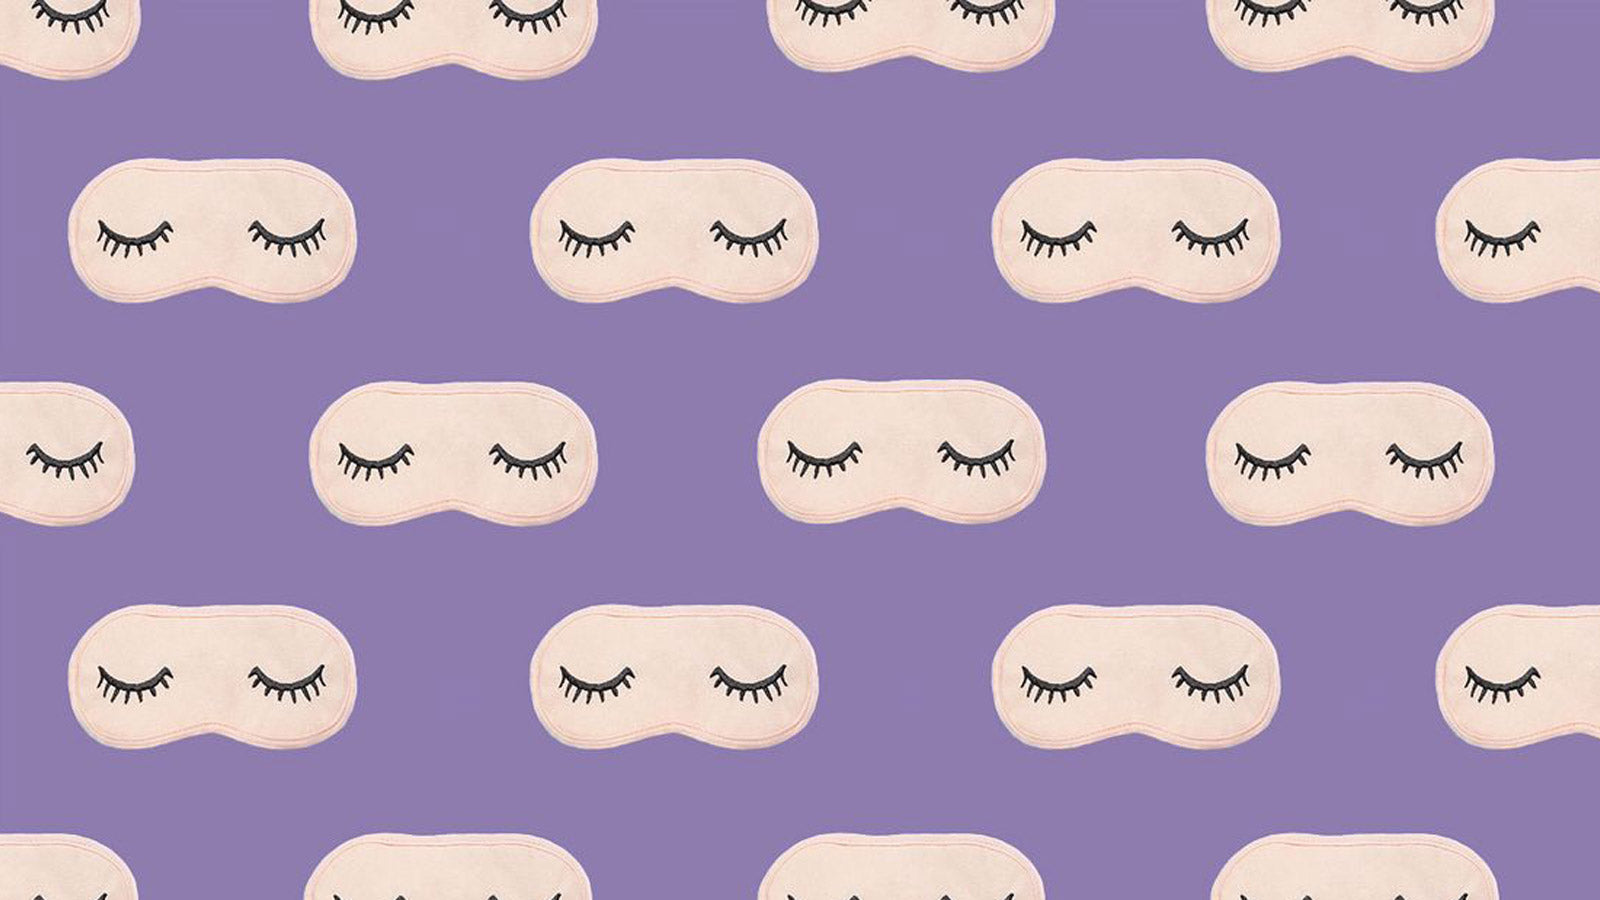 Sleeping masks with eyelashes on purple background